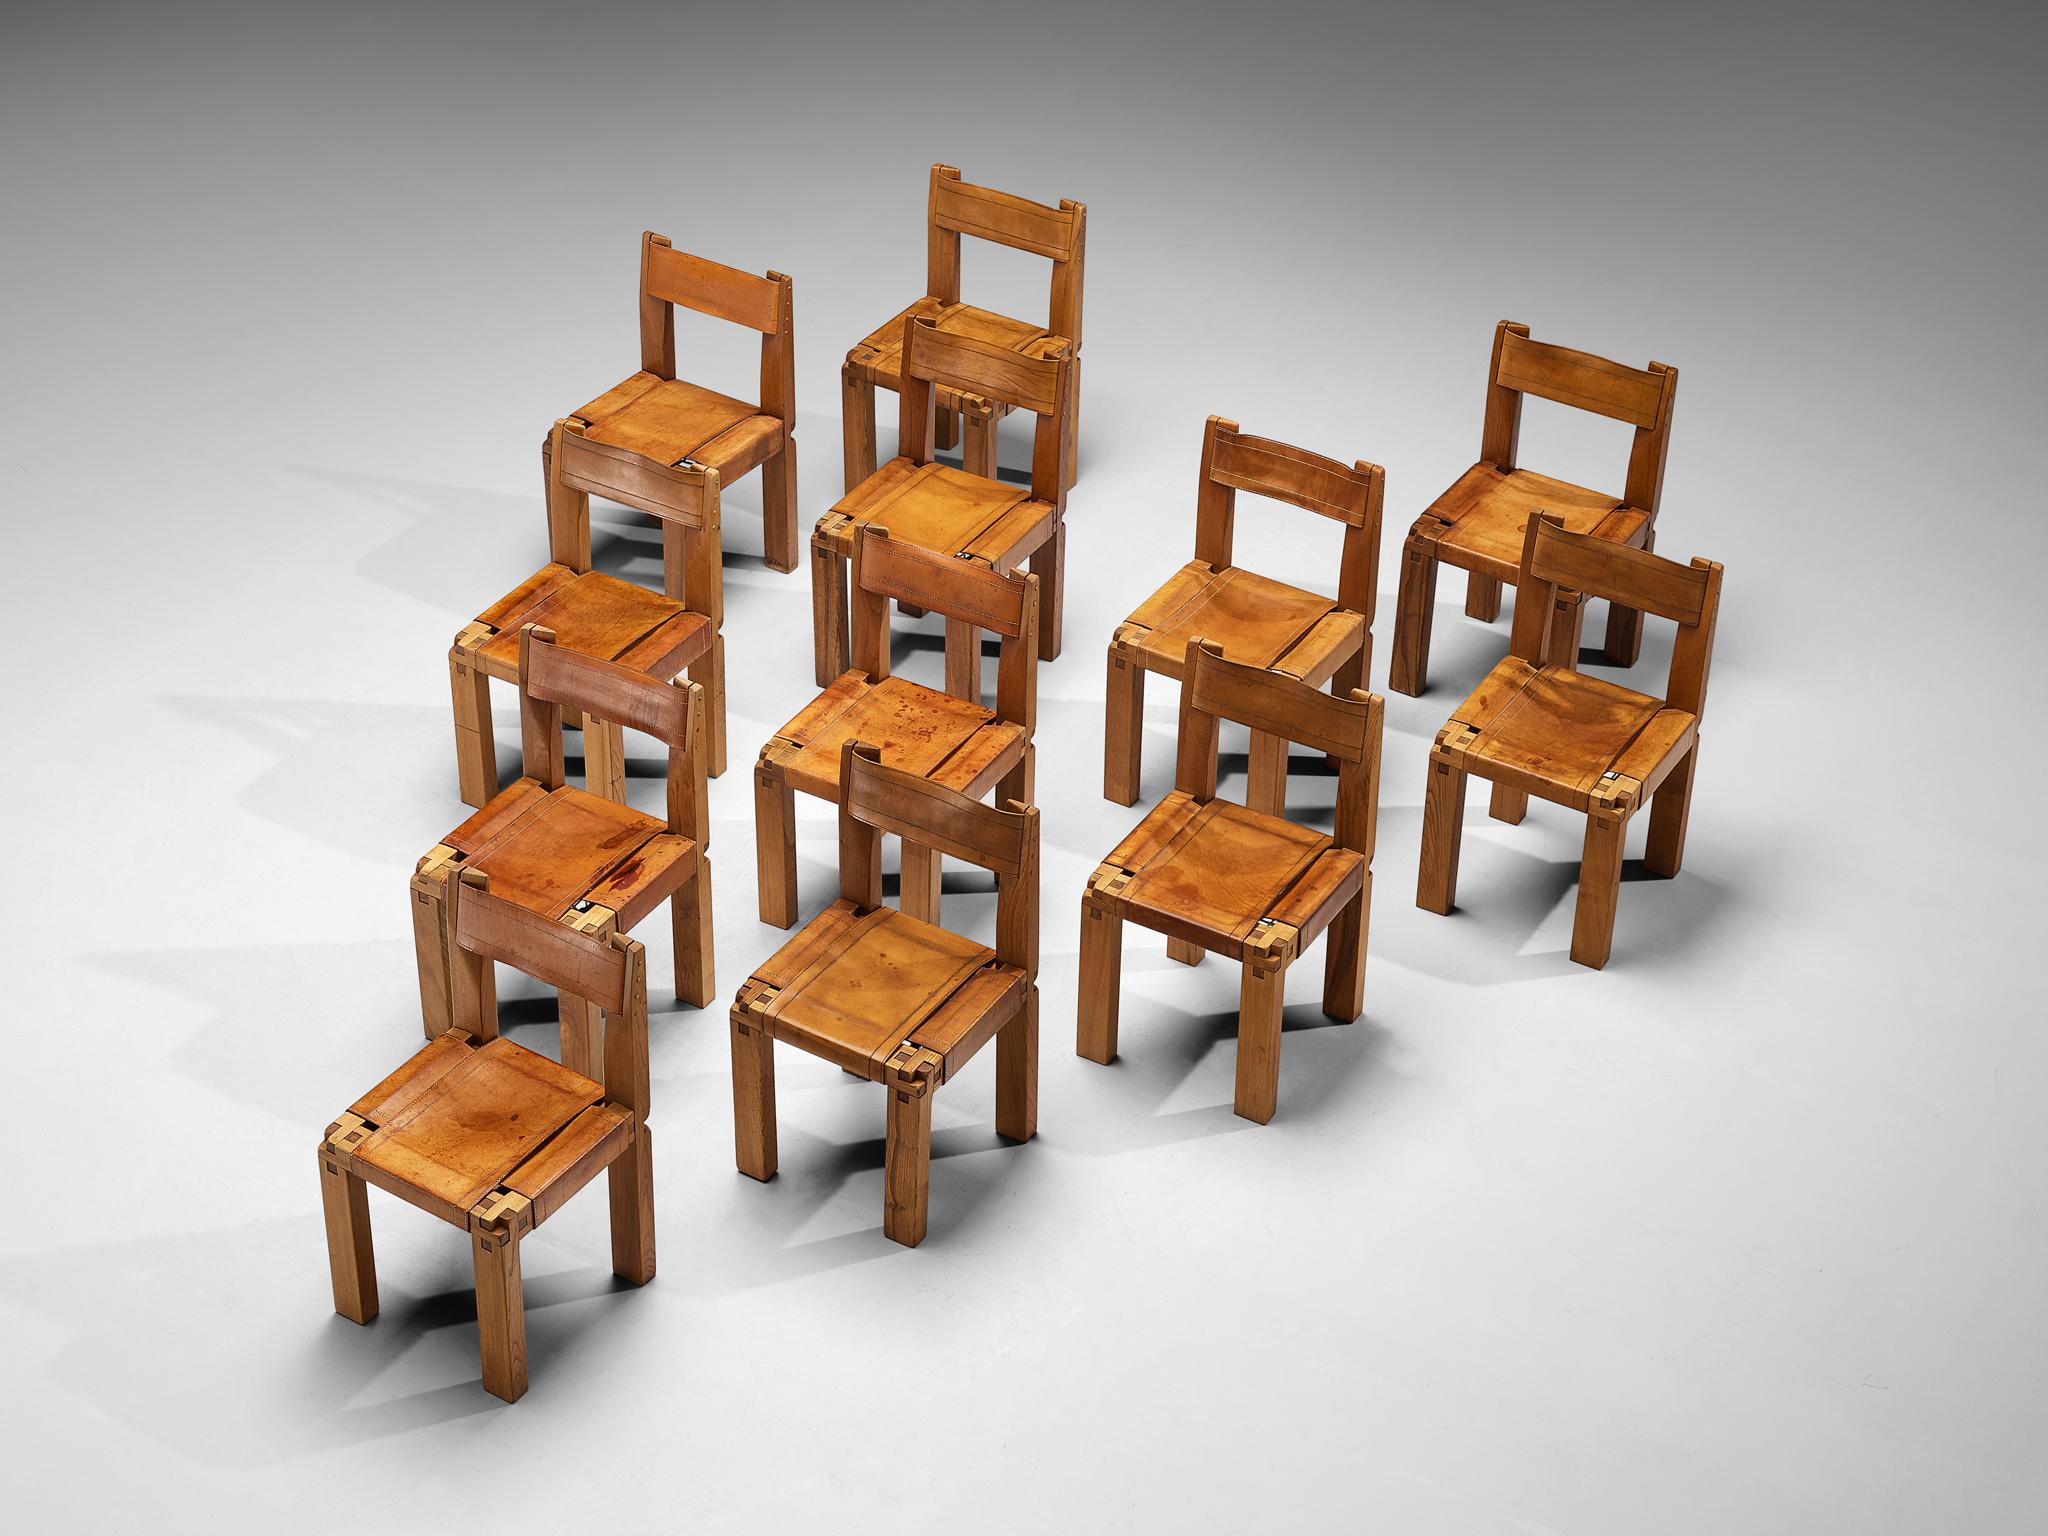 Pierre CIRCA, ensemble de douze chaises de salle à manger, modèle 'S11', orme, cuir, corde, France, circa 1978.

Ce dessin est une première édition de Pierre Chapo. Fabriquées en bois d'orme massif, les chaises présentent un design cubique raffiné,